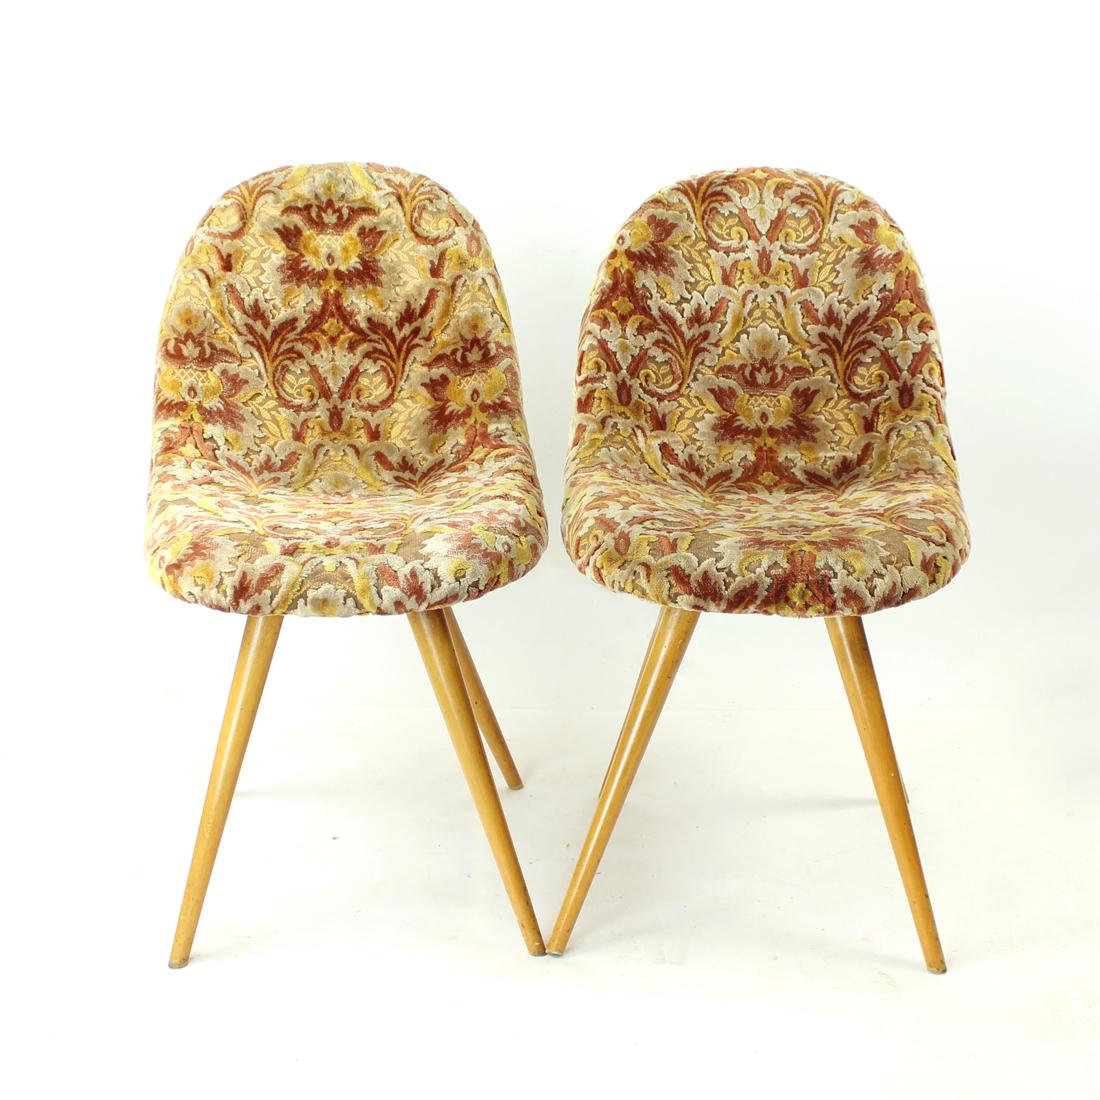 Paire de chaises à coquille originales de Tchécoslovaquie. Produit dans les années 1960, conçu par Miroslav Navratil. Les chaises ont un design unique et sont très typiques de l'époque d'origine. Les lignes élégantes et le toucher doux du tissu de